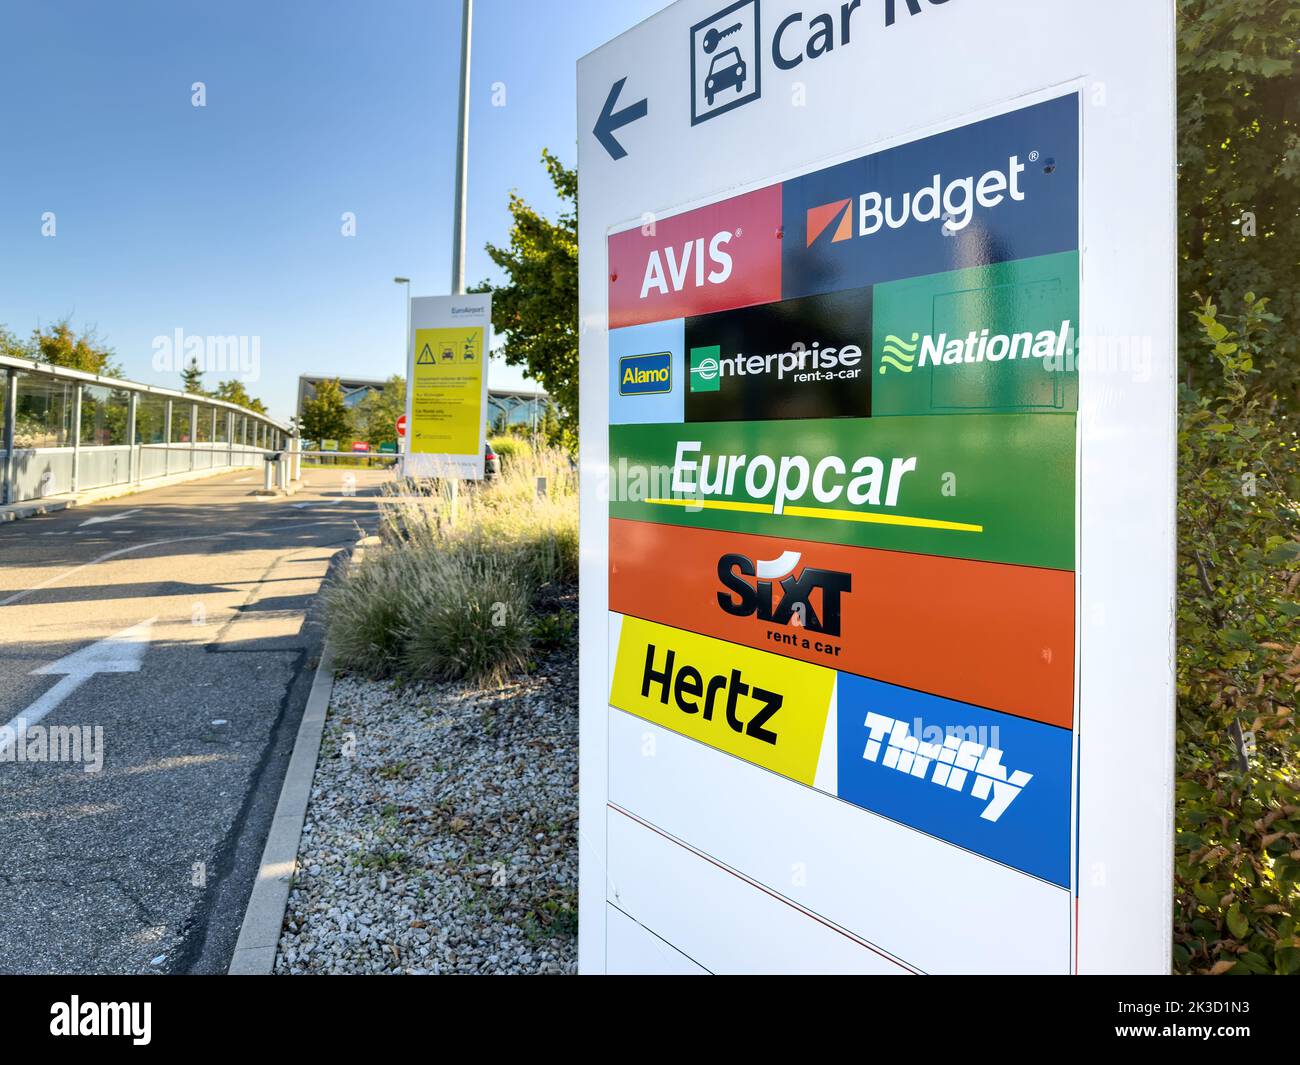 Europcar Banque de photographies et d'images à haute résolution - Page 3 -  Alamy